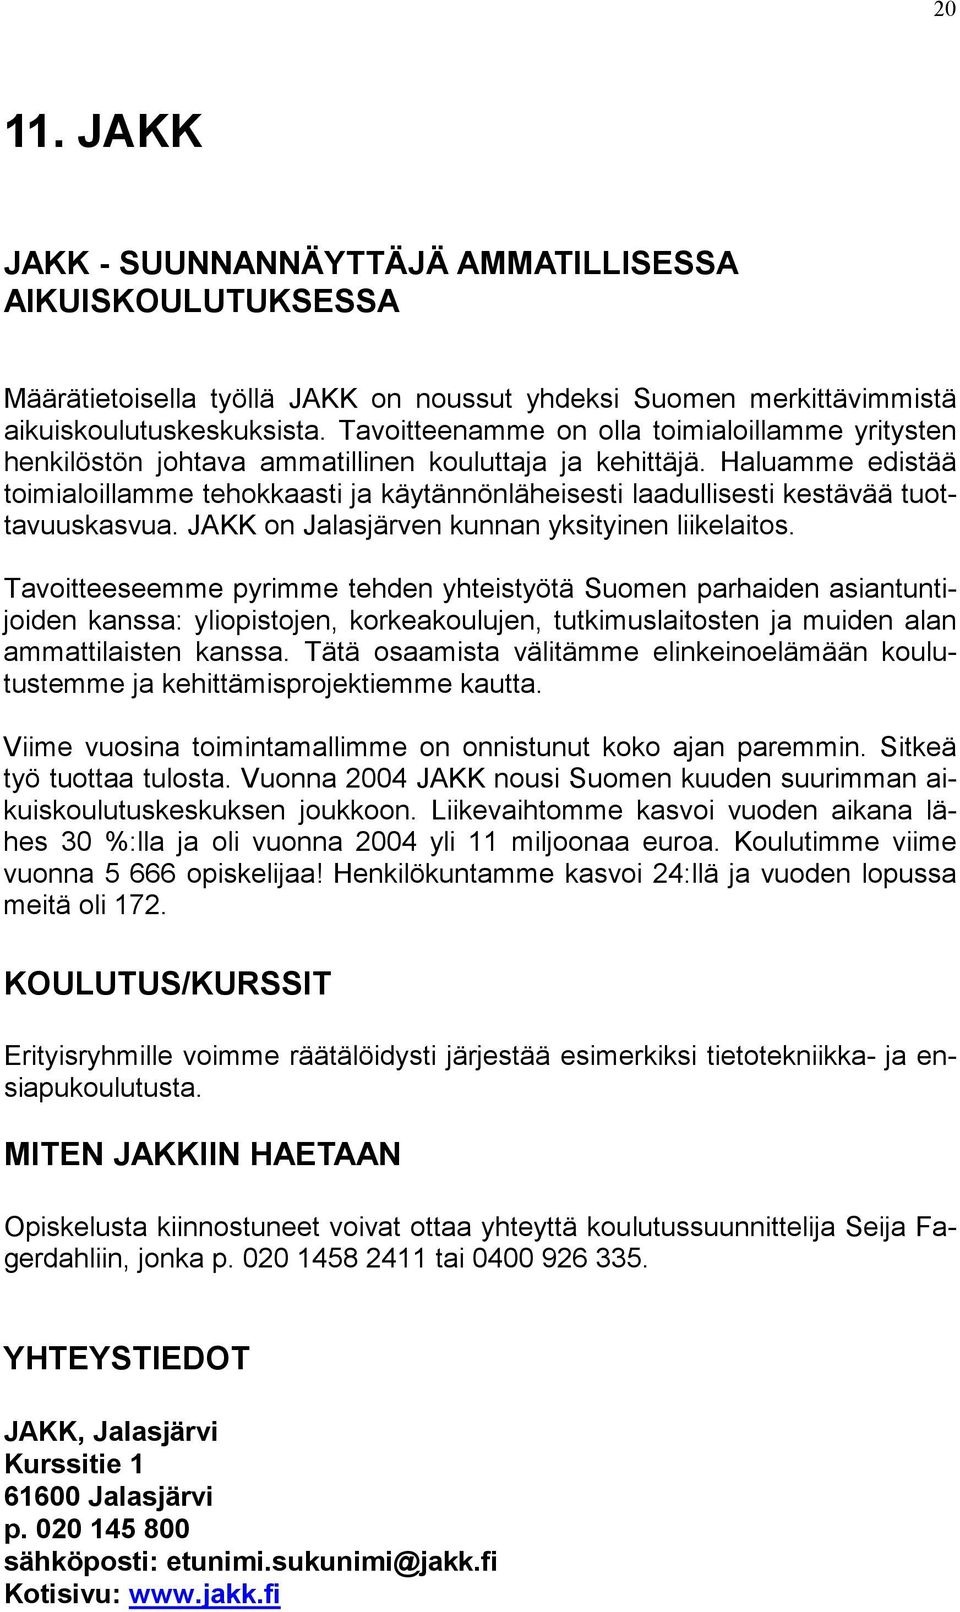 Haluamme edistää toimialoillamme tehokkaasti ja käytännönläheisesti laadullisesti kestävää tuottavuuskasvua. JAKK on Jalasjärven kunnan yksityinen liikelaitos.